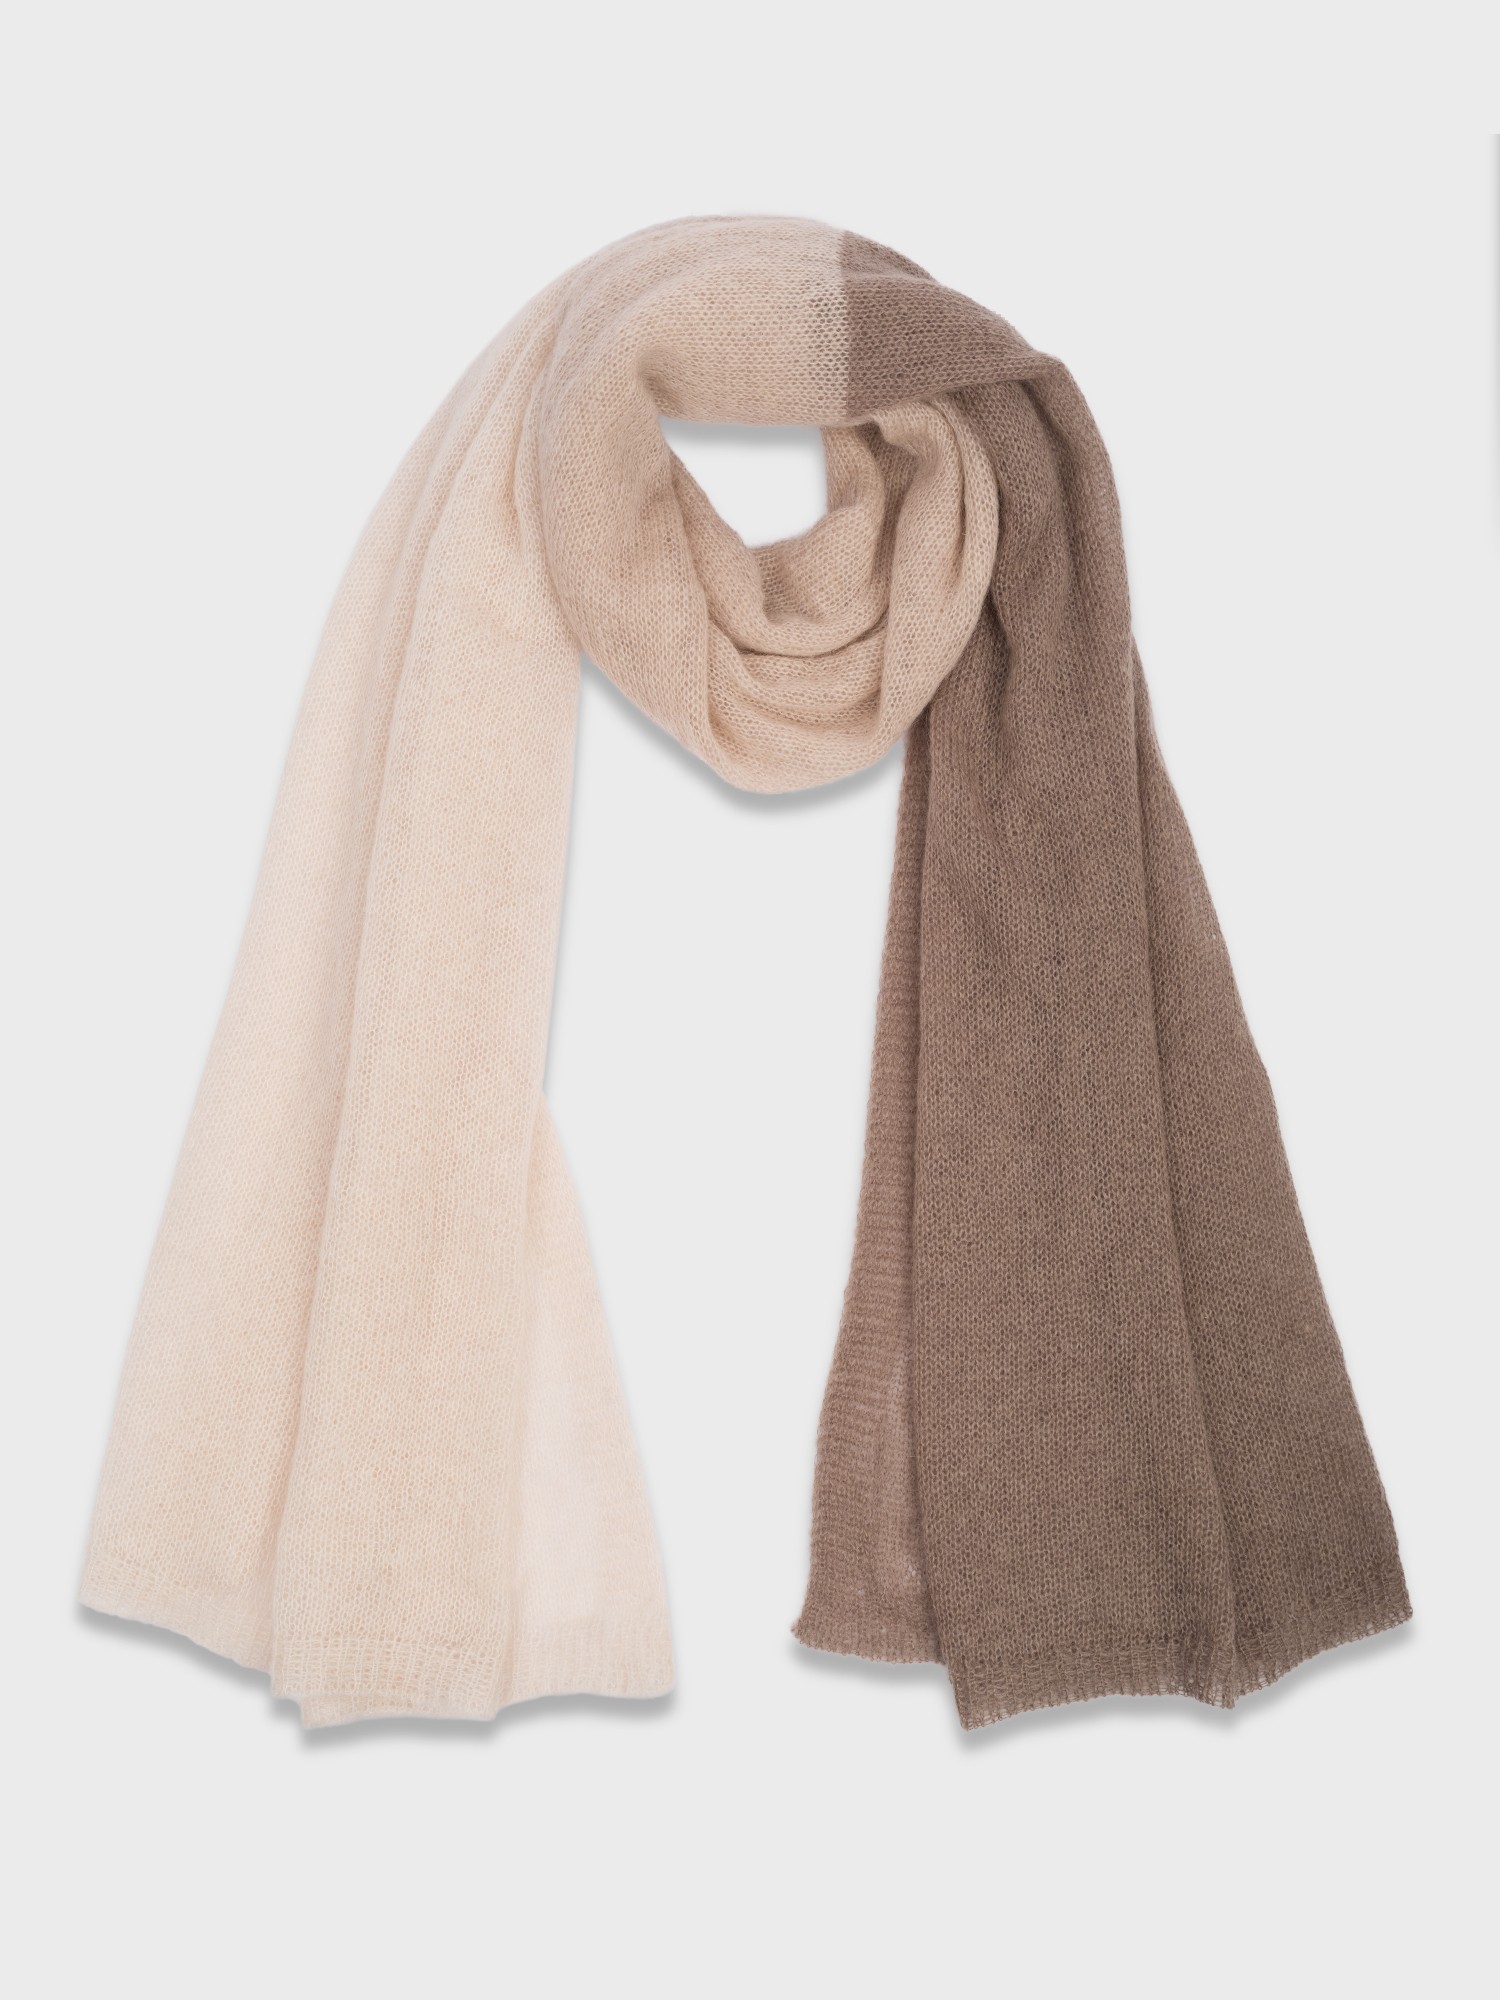 Женские шарфы из шерсти— купить в интернет-магазине Ламода